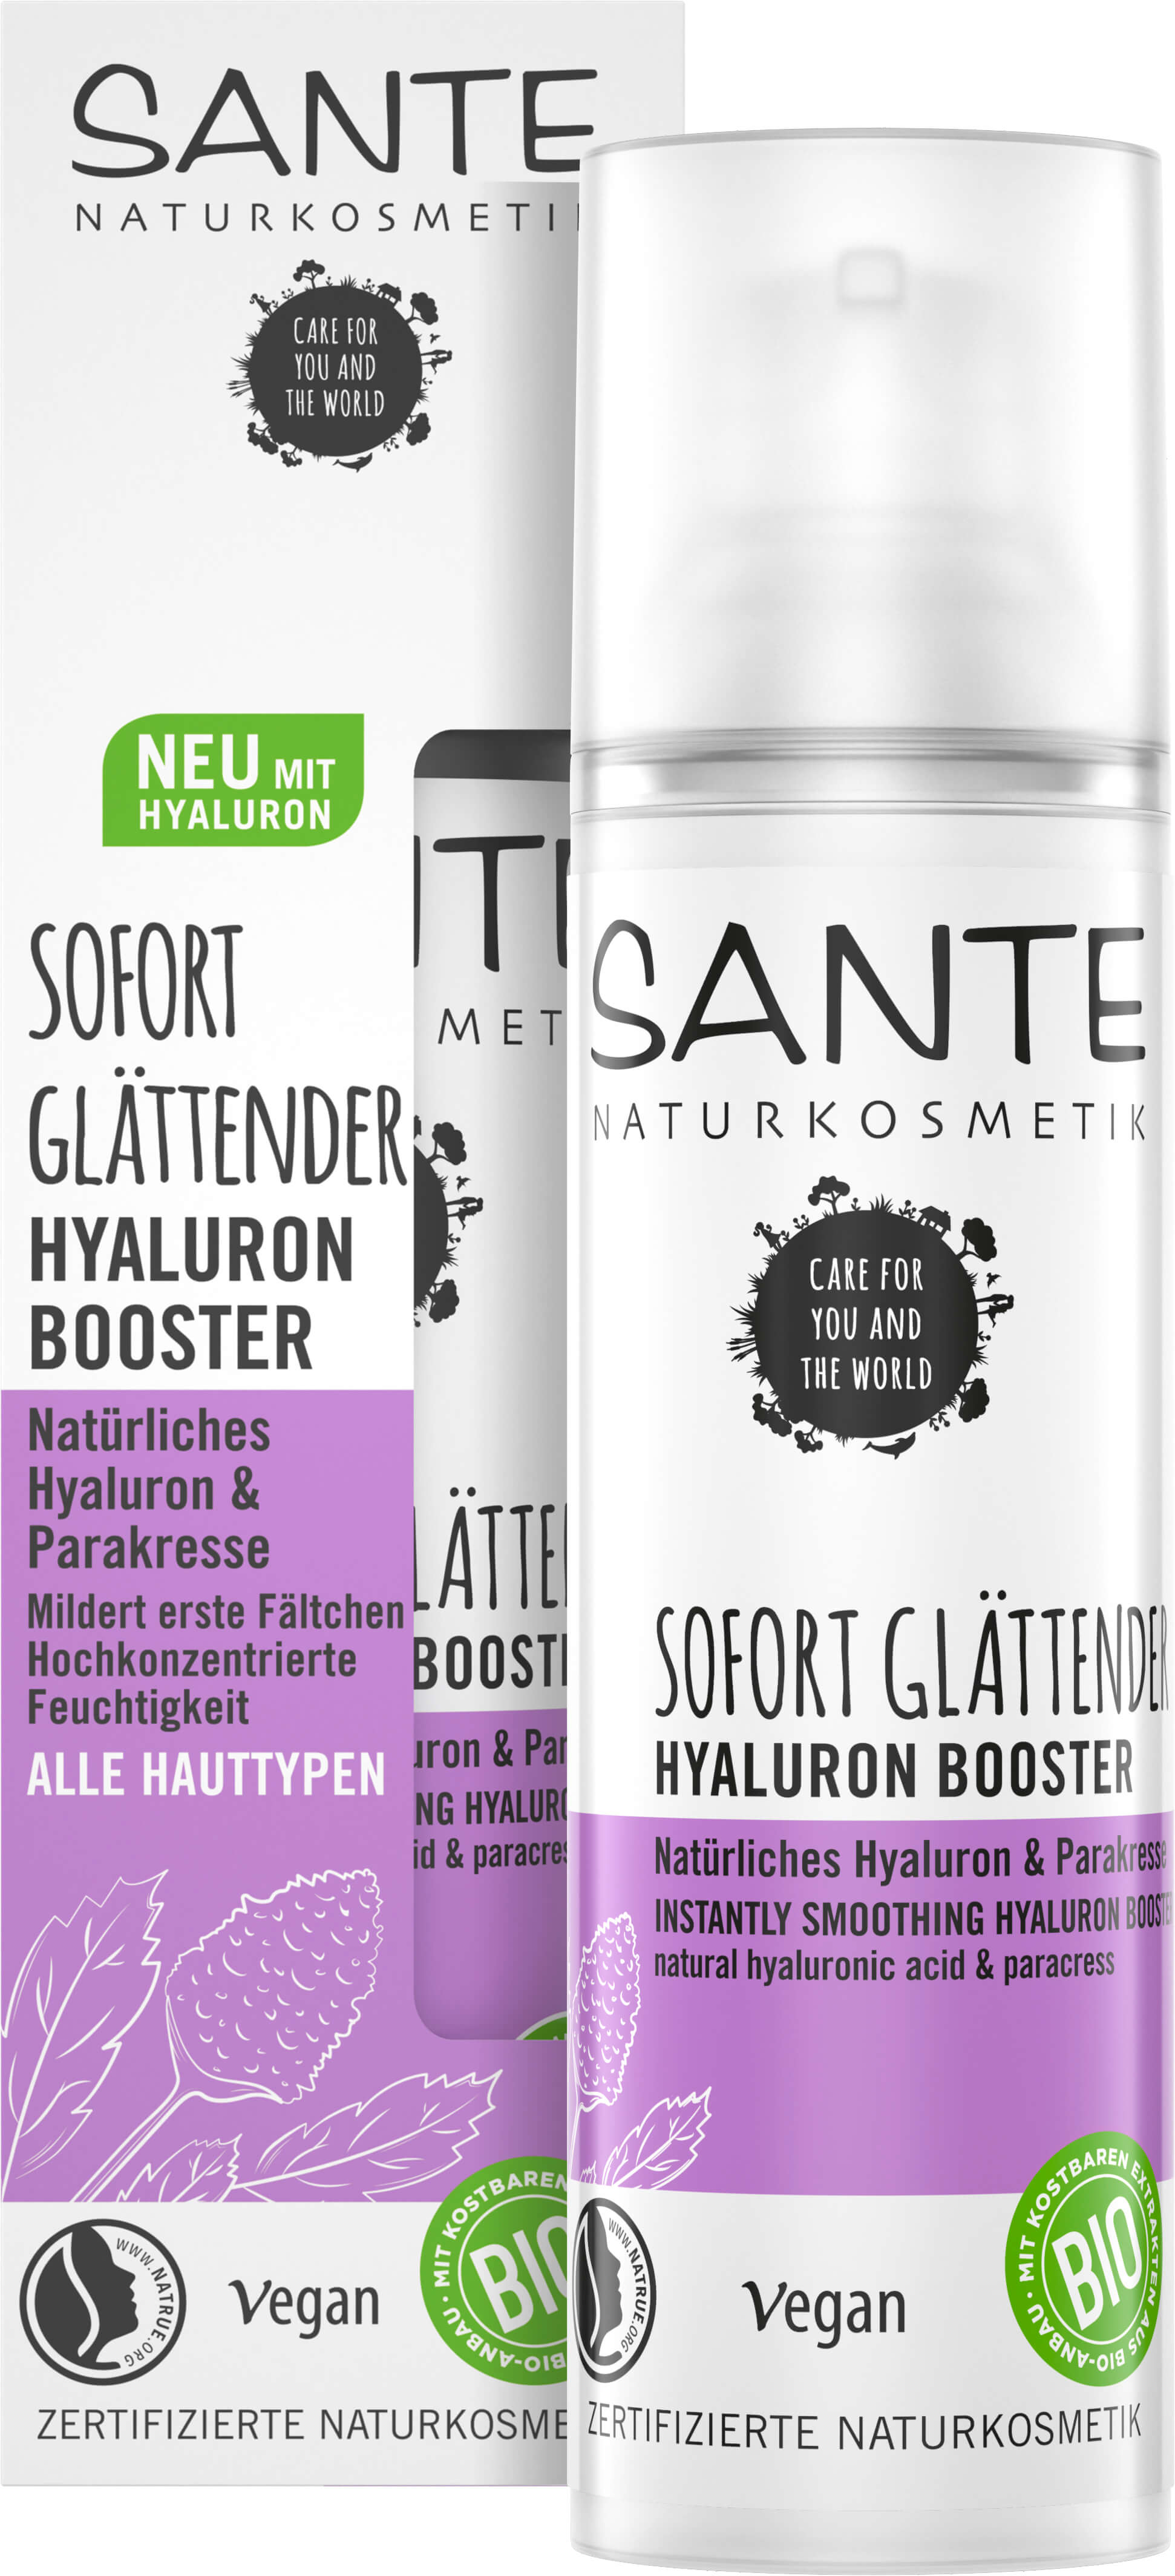 Sofort Glättender Hyaluron Booster Natürliches Hyaluron | Naturkosmetik & SANTE Parakresse